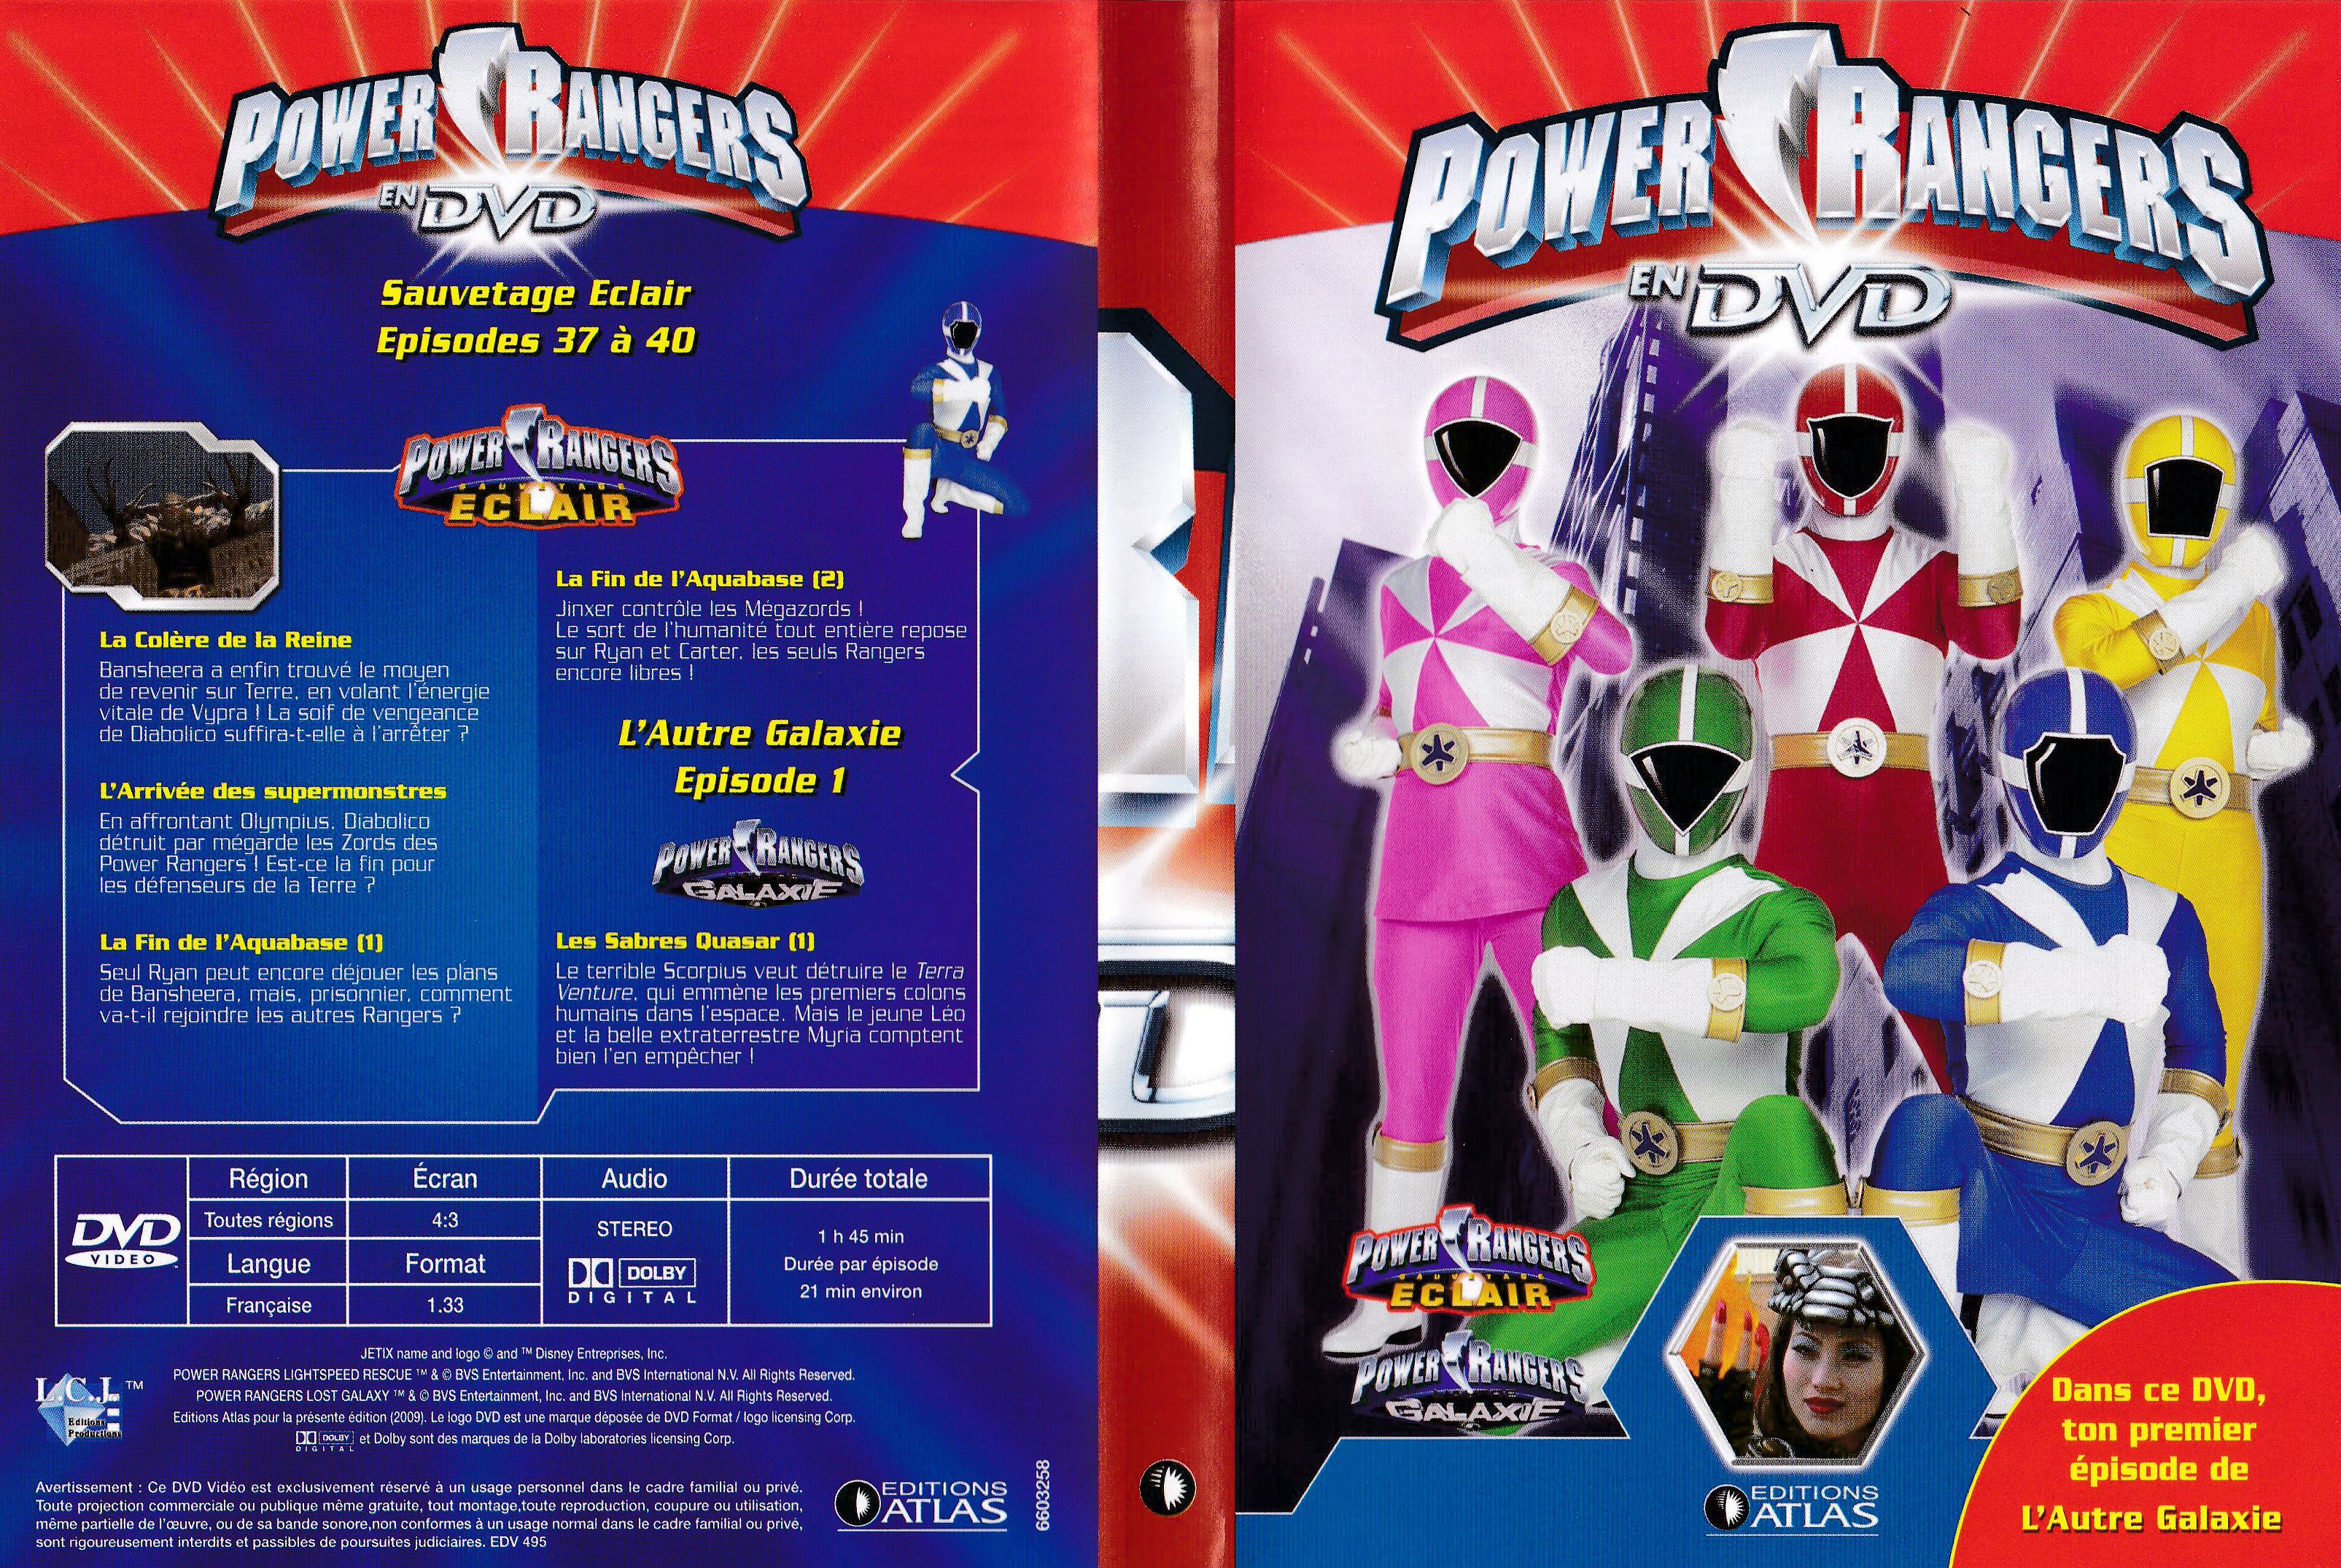 Power Rangers en DVD n°58